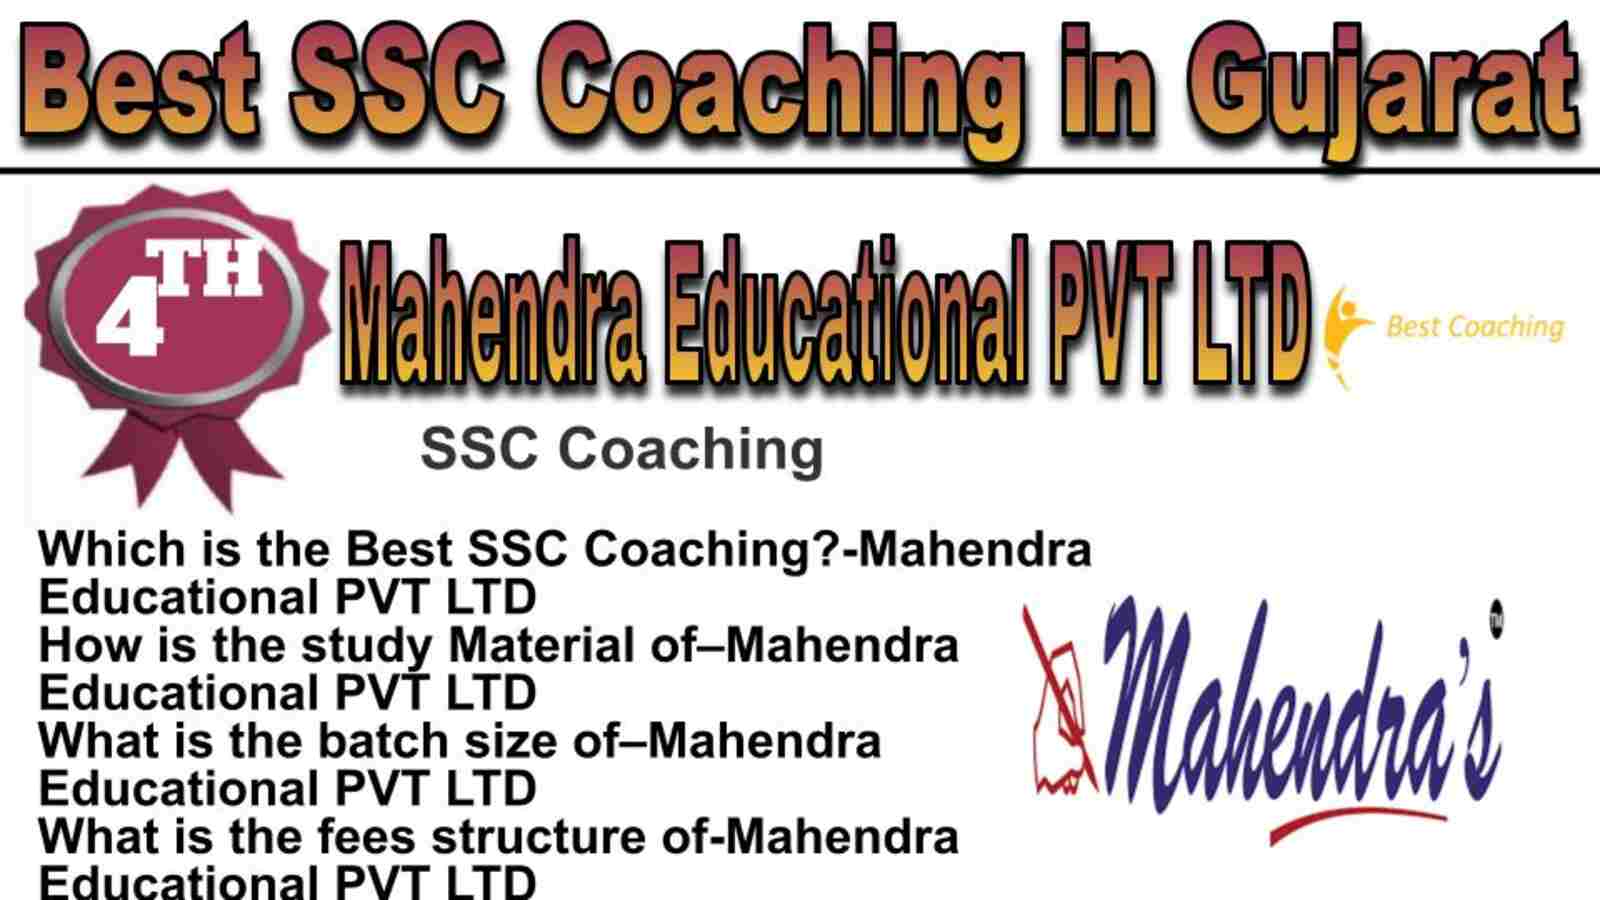 Rank 4 best SSC coaching in Gujarat